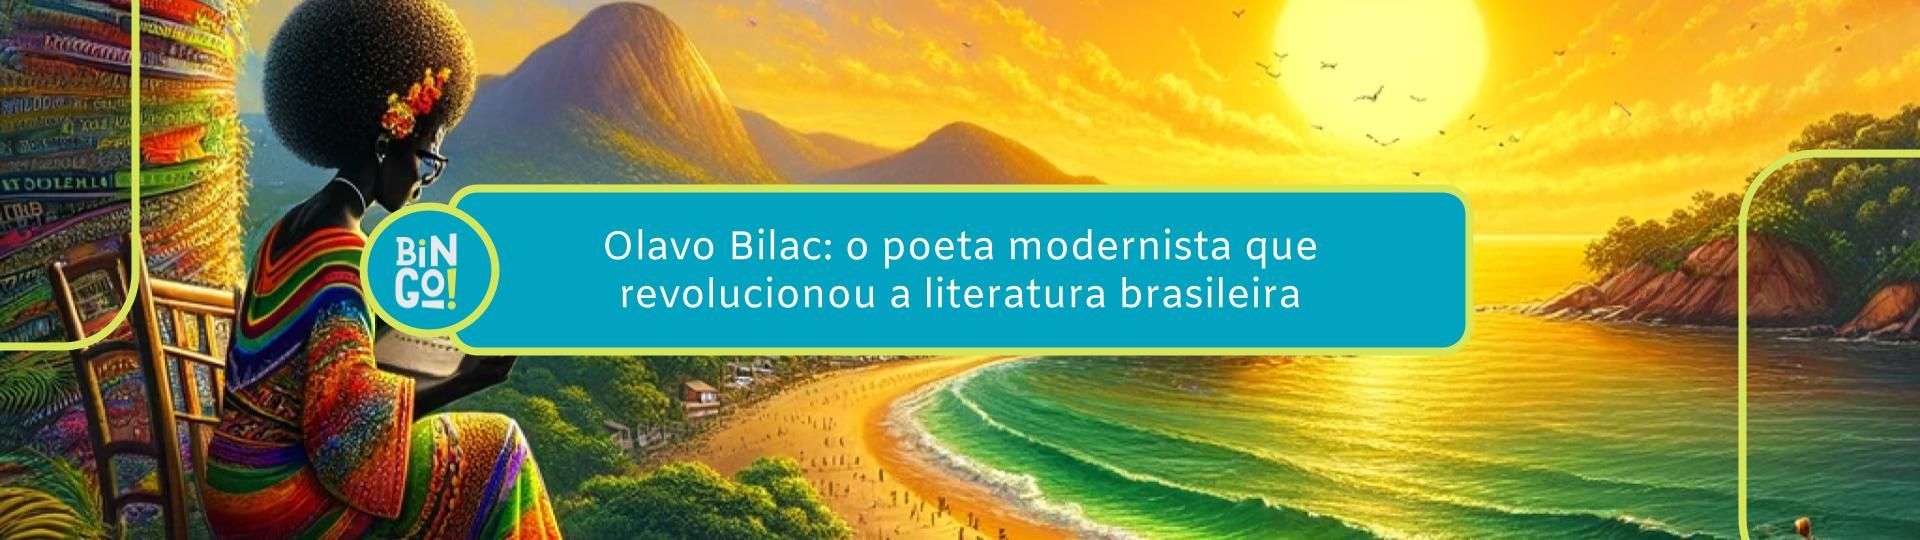 olavo-bilac-o-poeta-modernista-que-revolucionou-a-literatura-brasileira